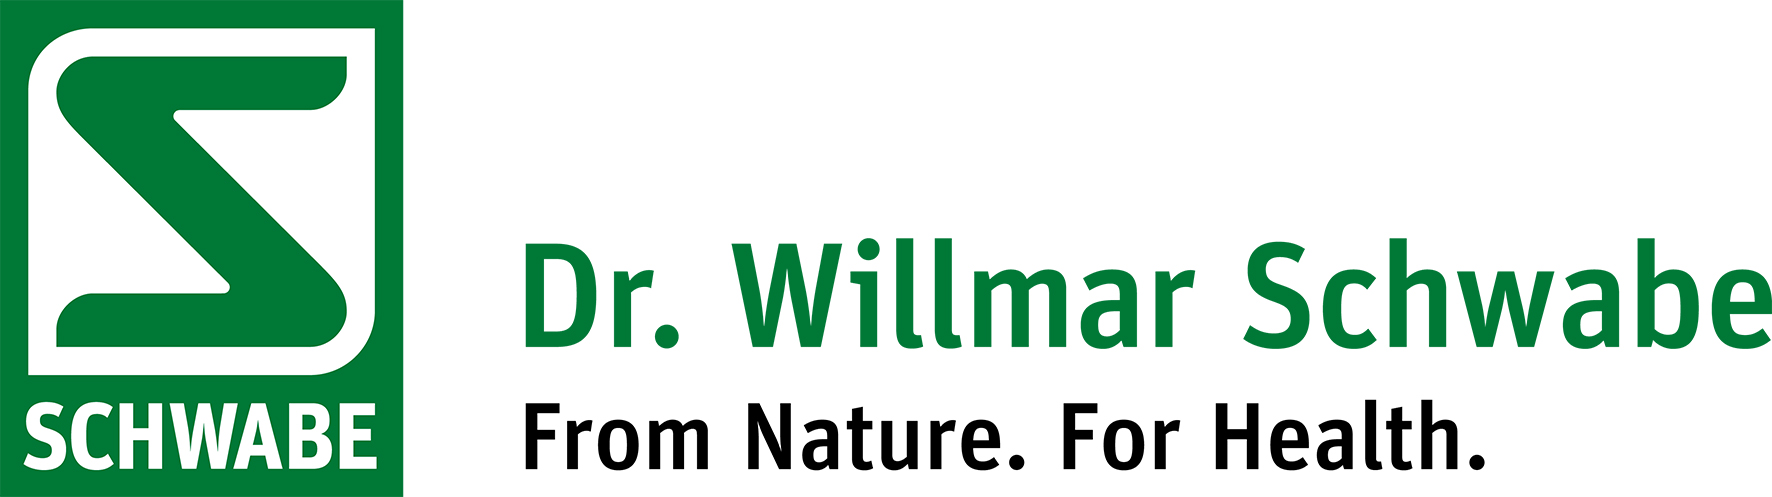 Logo_DrWillmarSchwabe_RGB_green